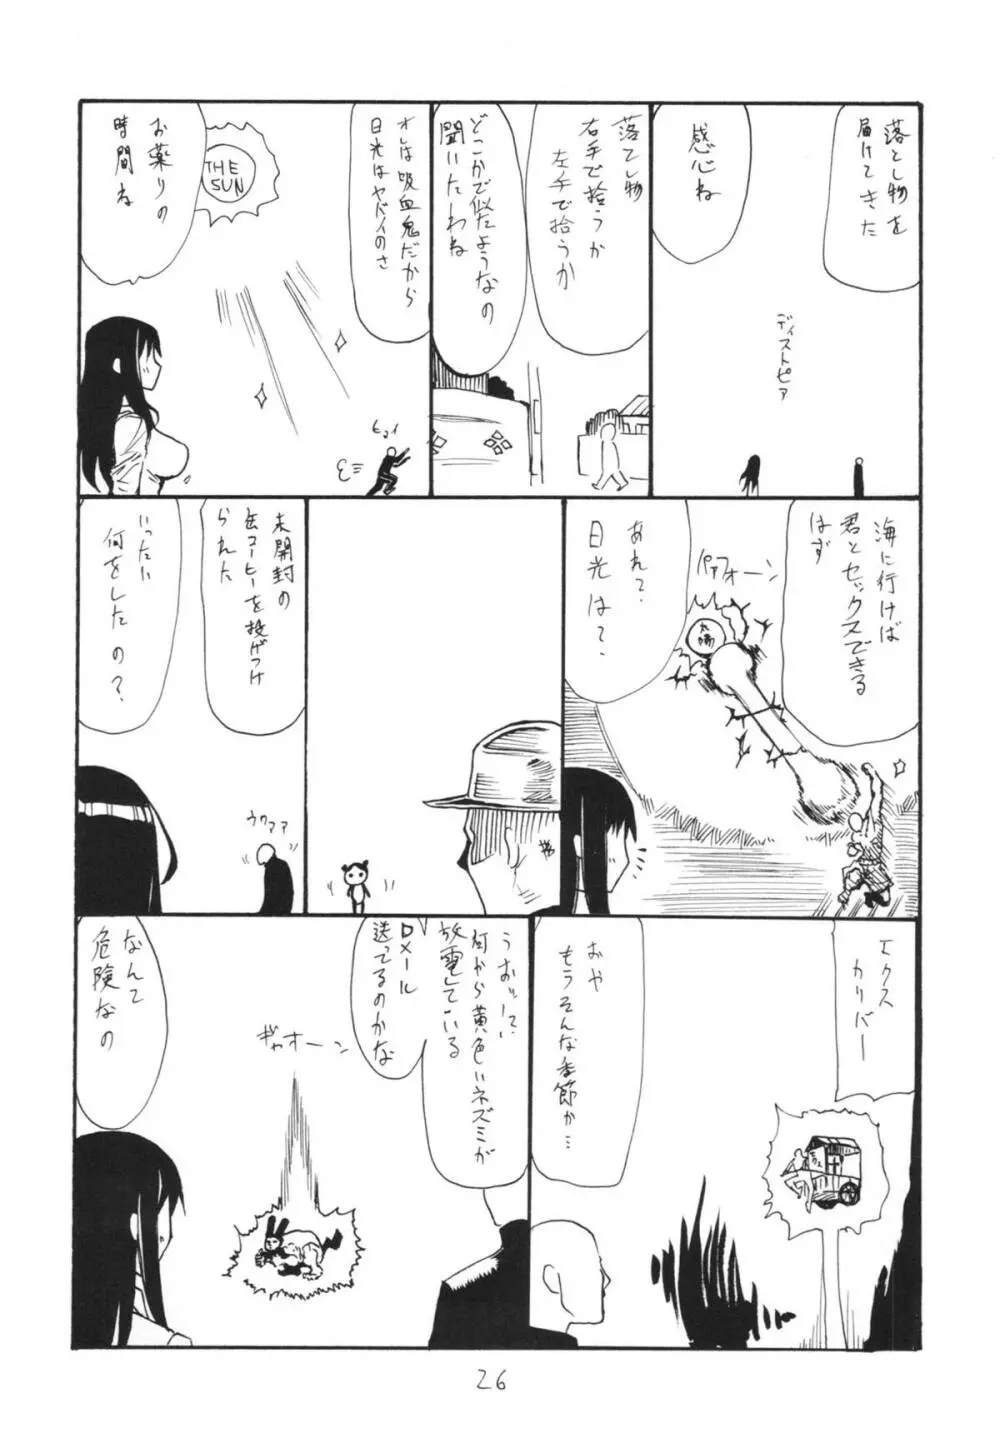 羽変わる - page26